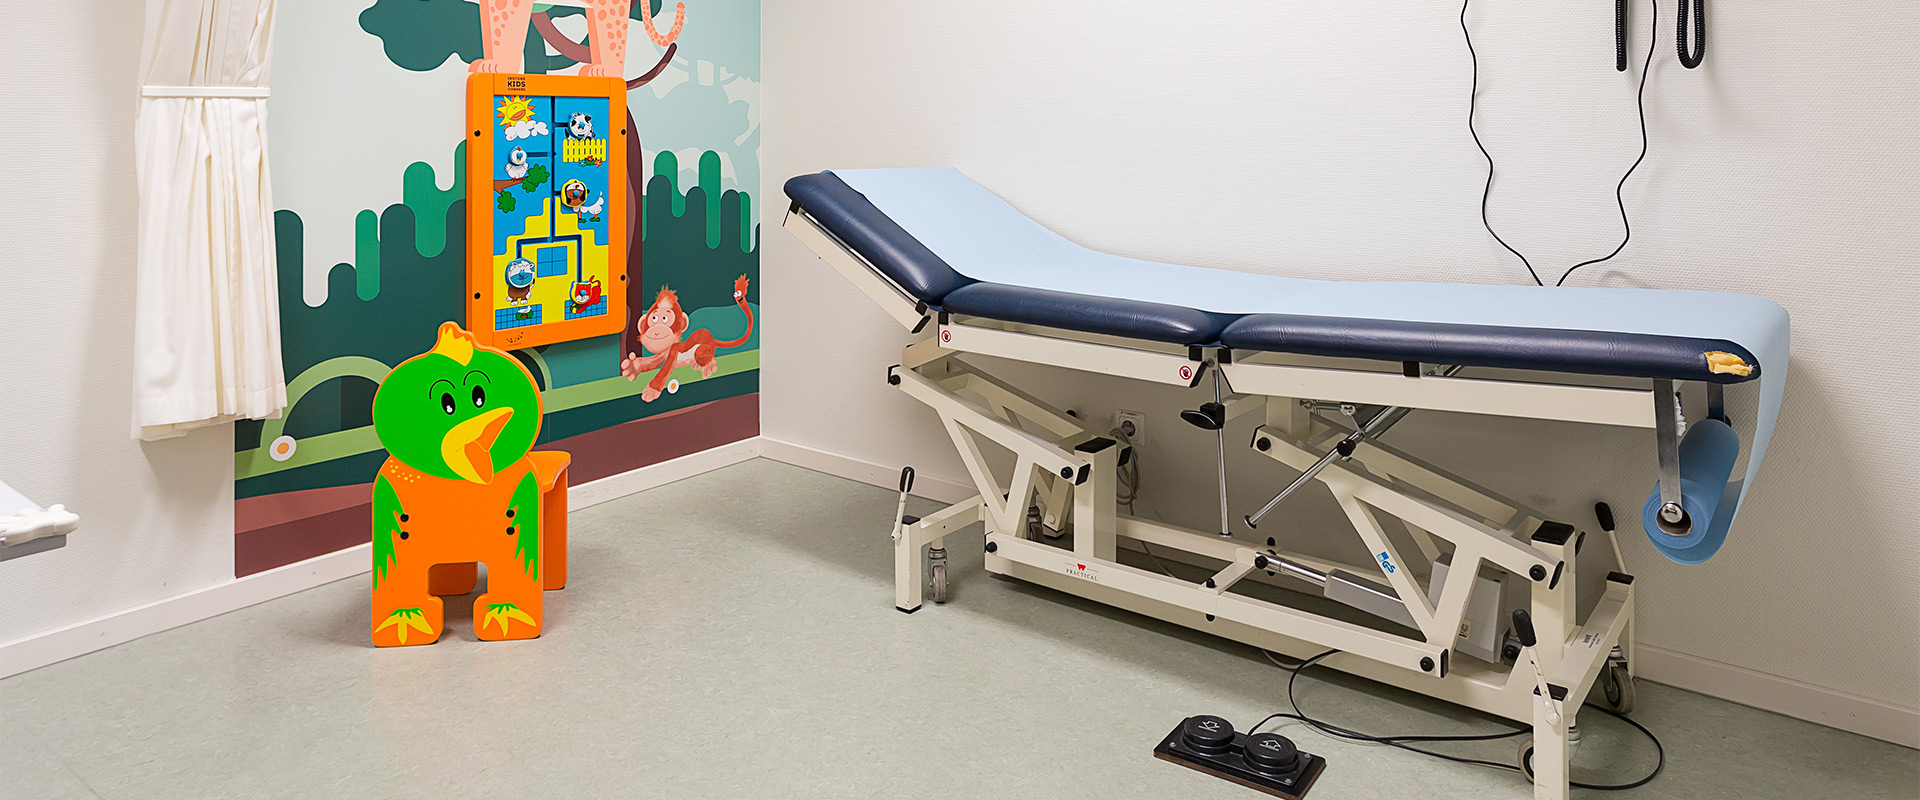 Maasstad hospital kids furniture | IKC Healthcare